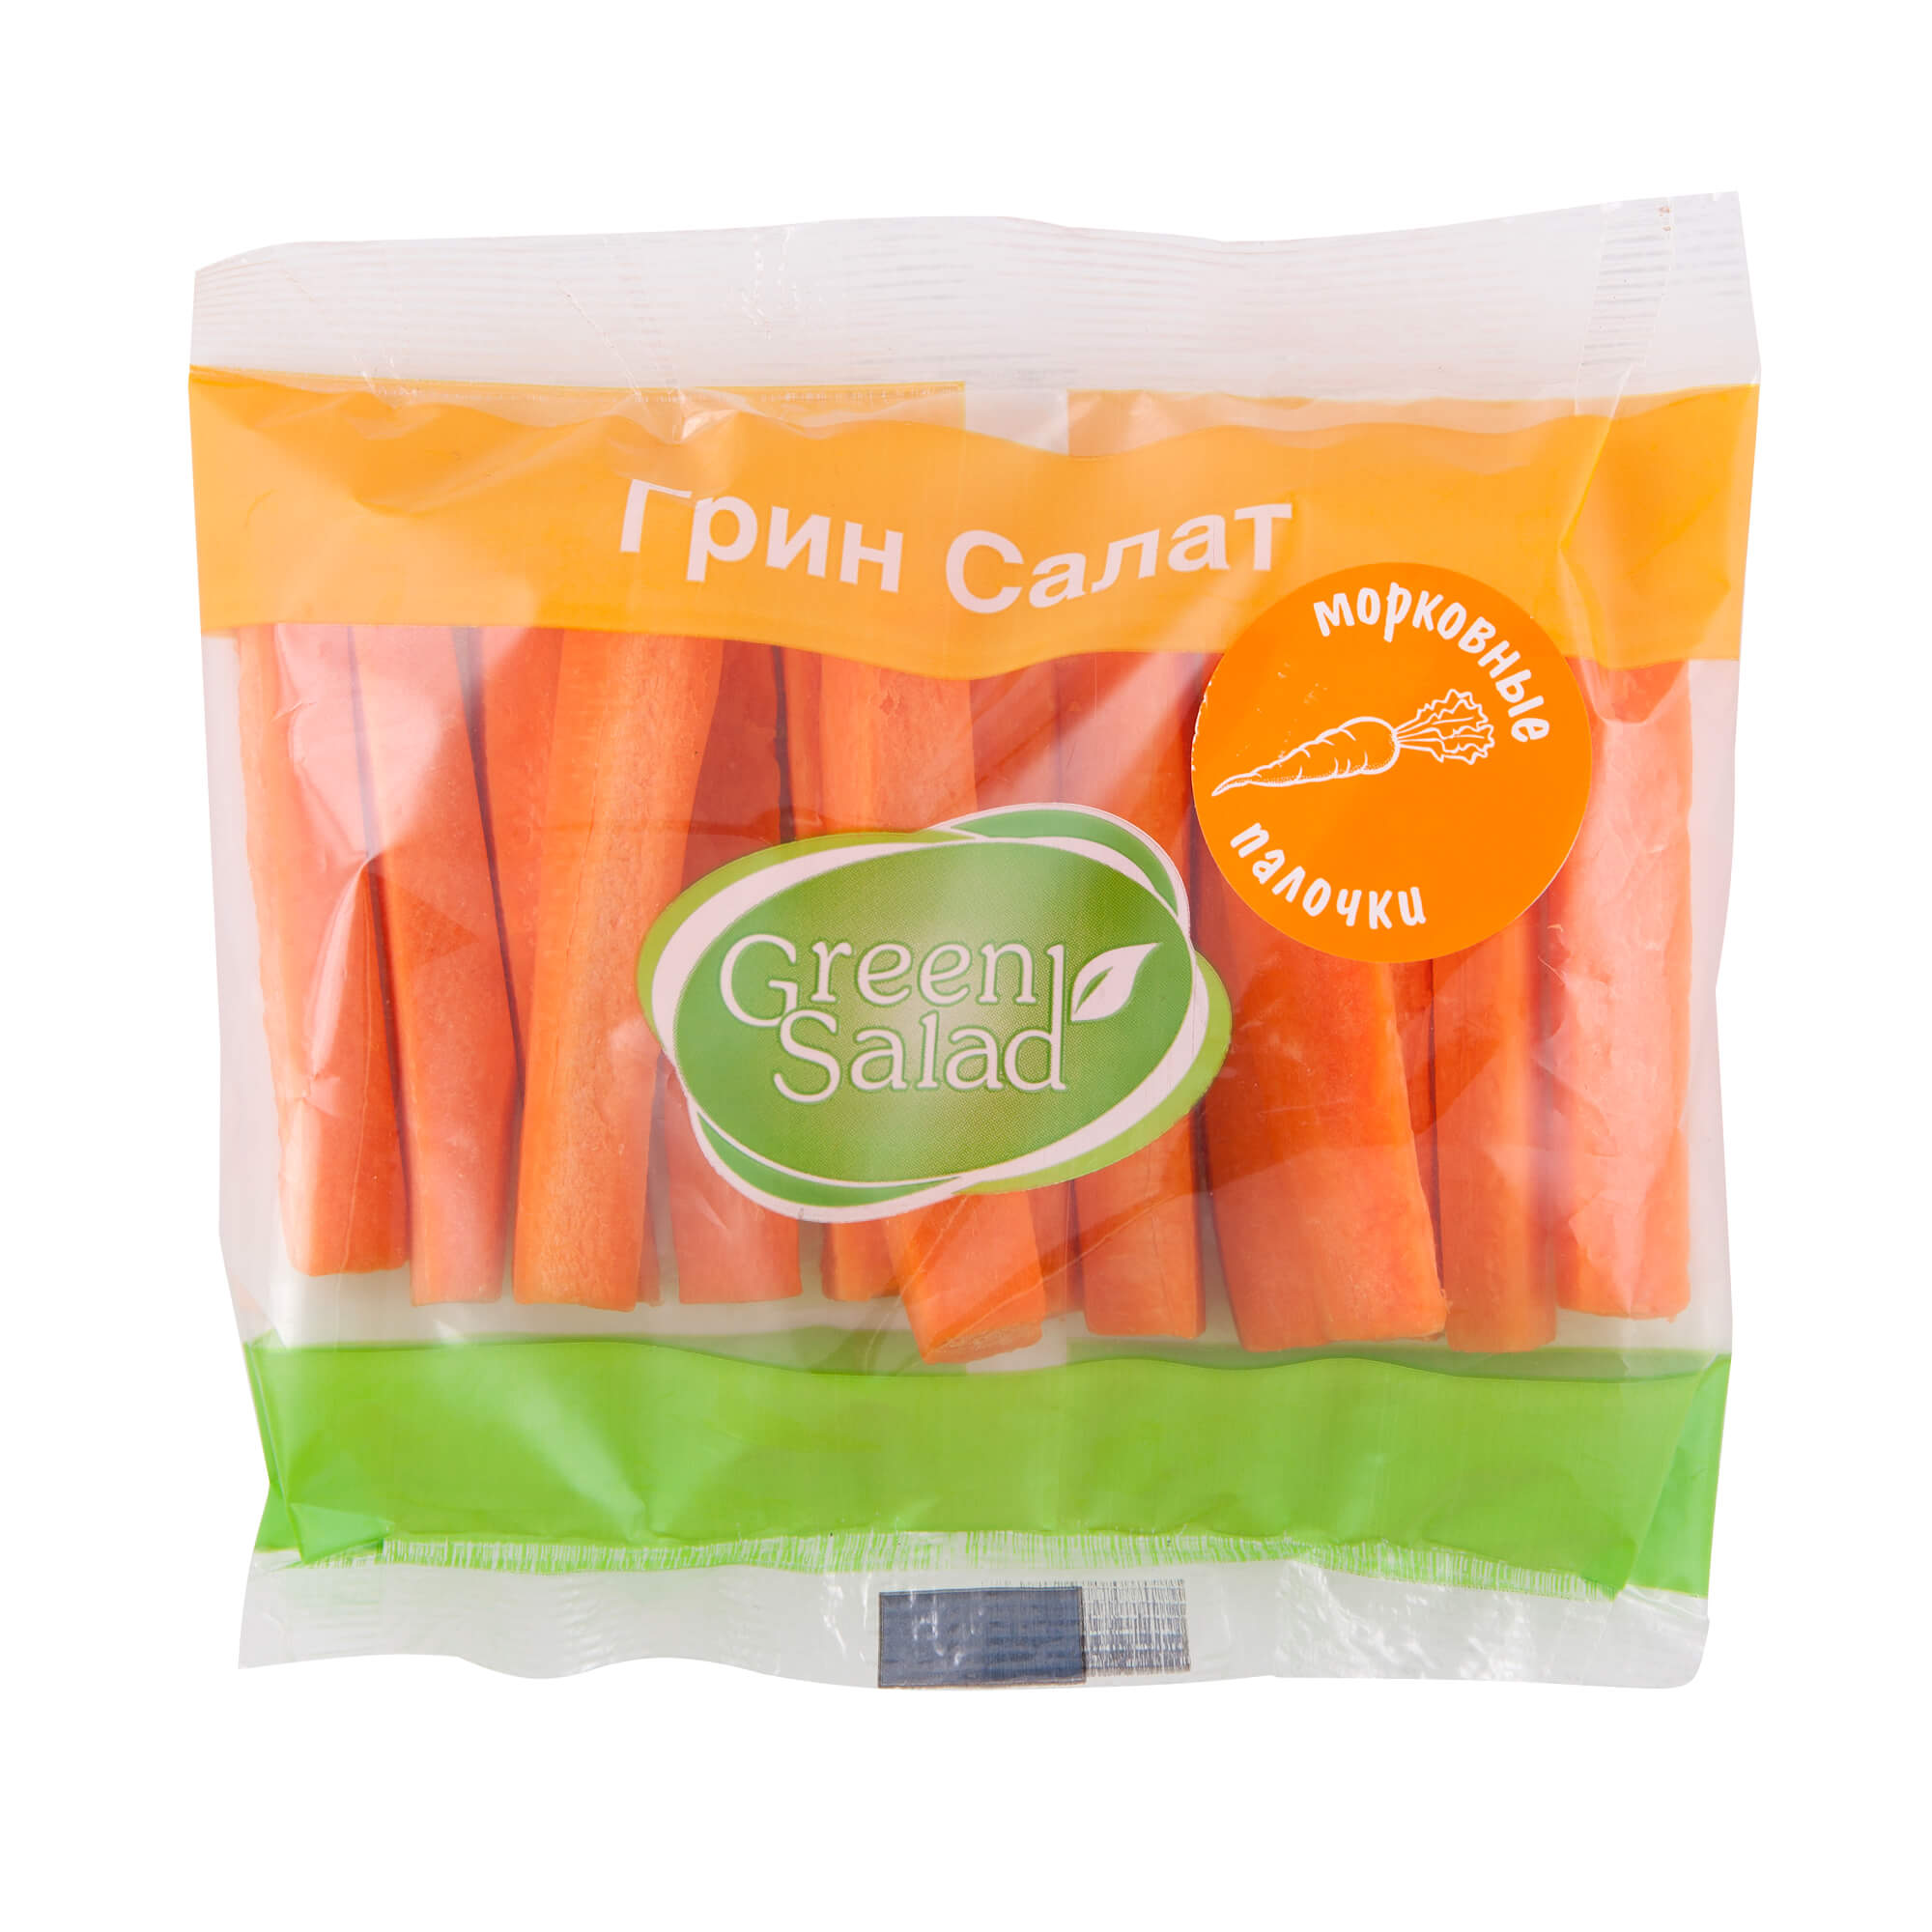 Купить морковные палочки оптом в СПб